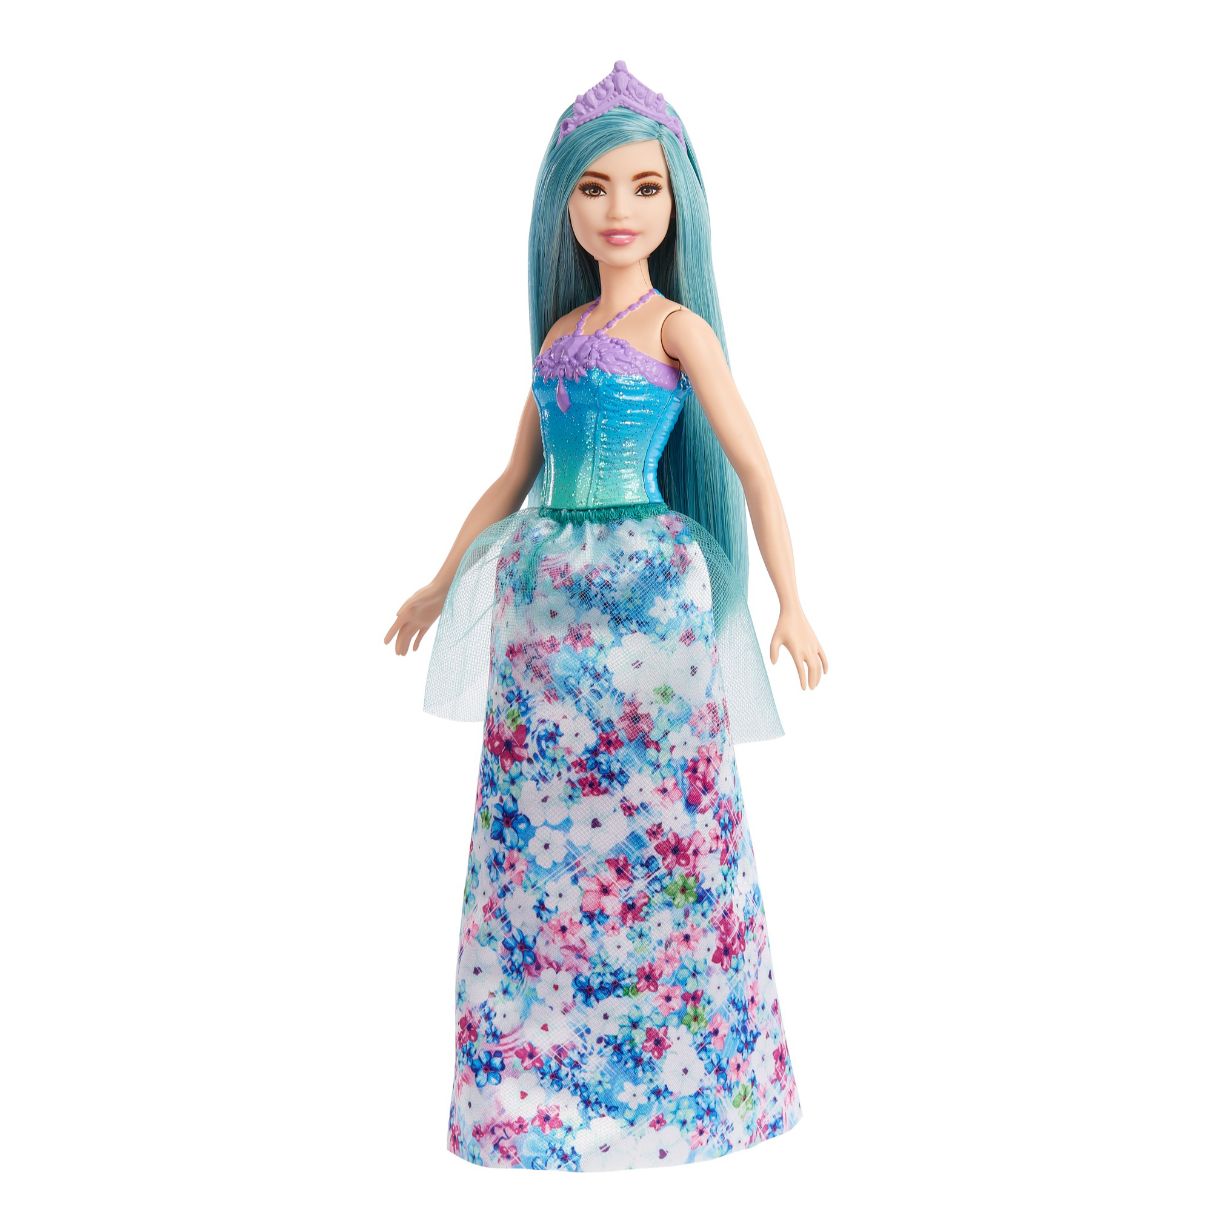 barbie princesa muñeca surtida con falda estampada de flores con tul y corona, juguete +3 años (mattel hgr13)